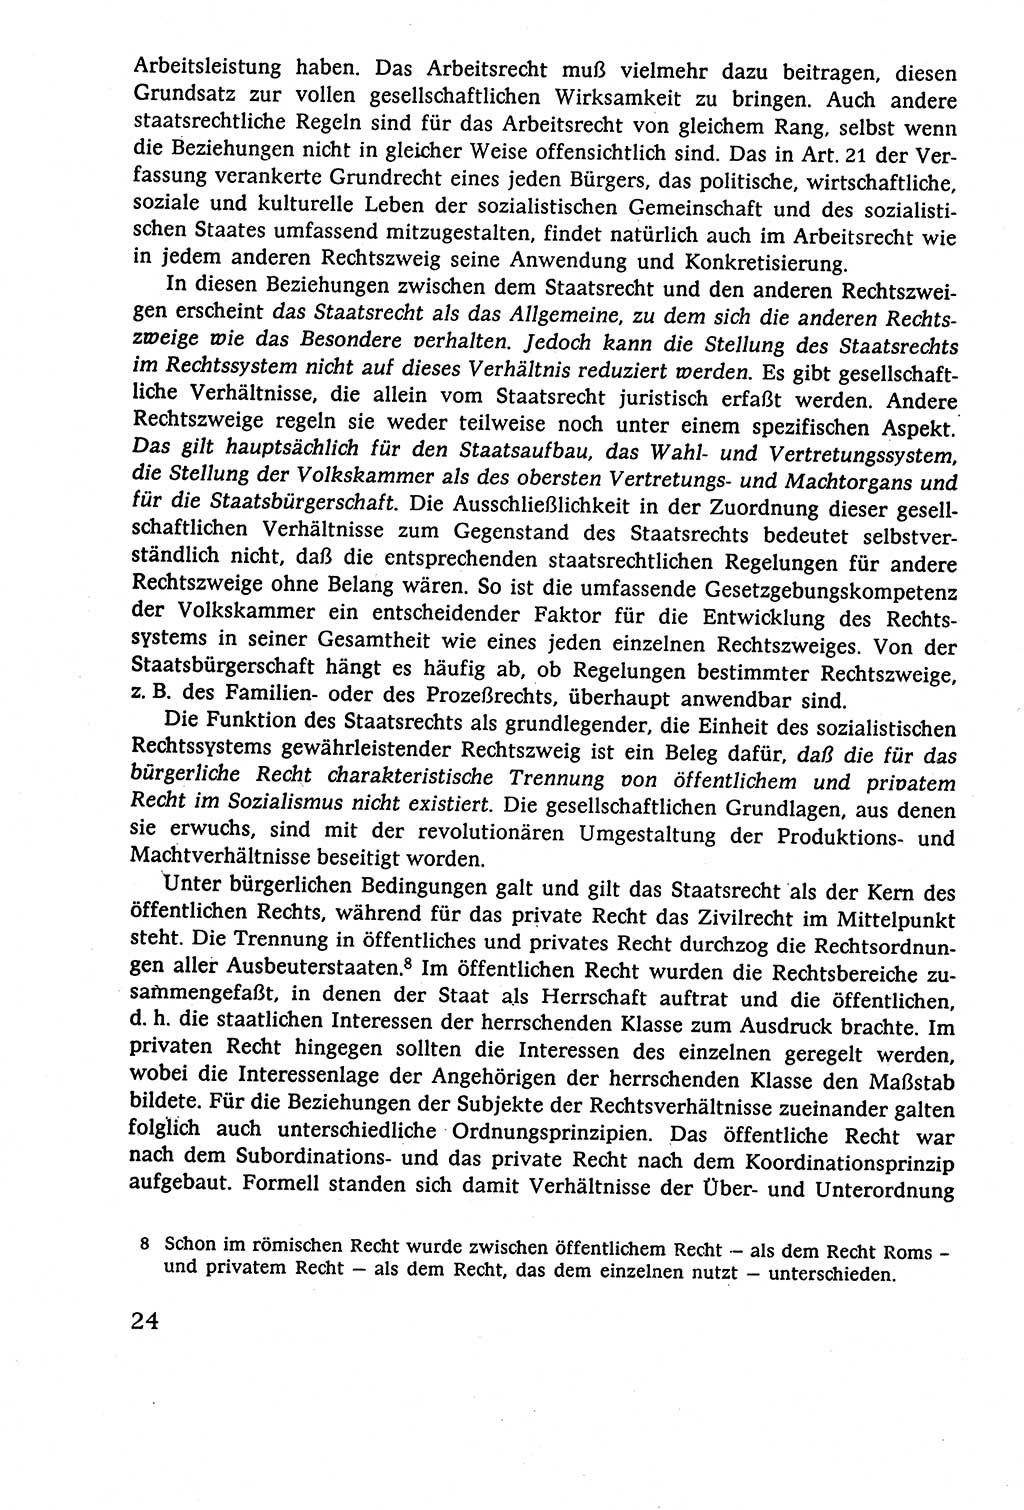 Staatsrecht der DDR (Deutsche Demokratische Republik), Lehrbuch 1977, Seite 24 (St.-R. DDR Lb. 1977, S. 24)